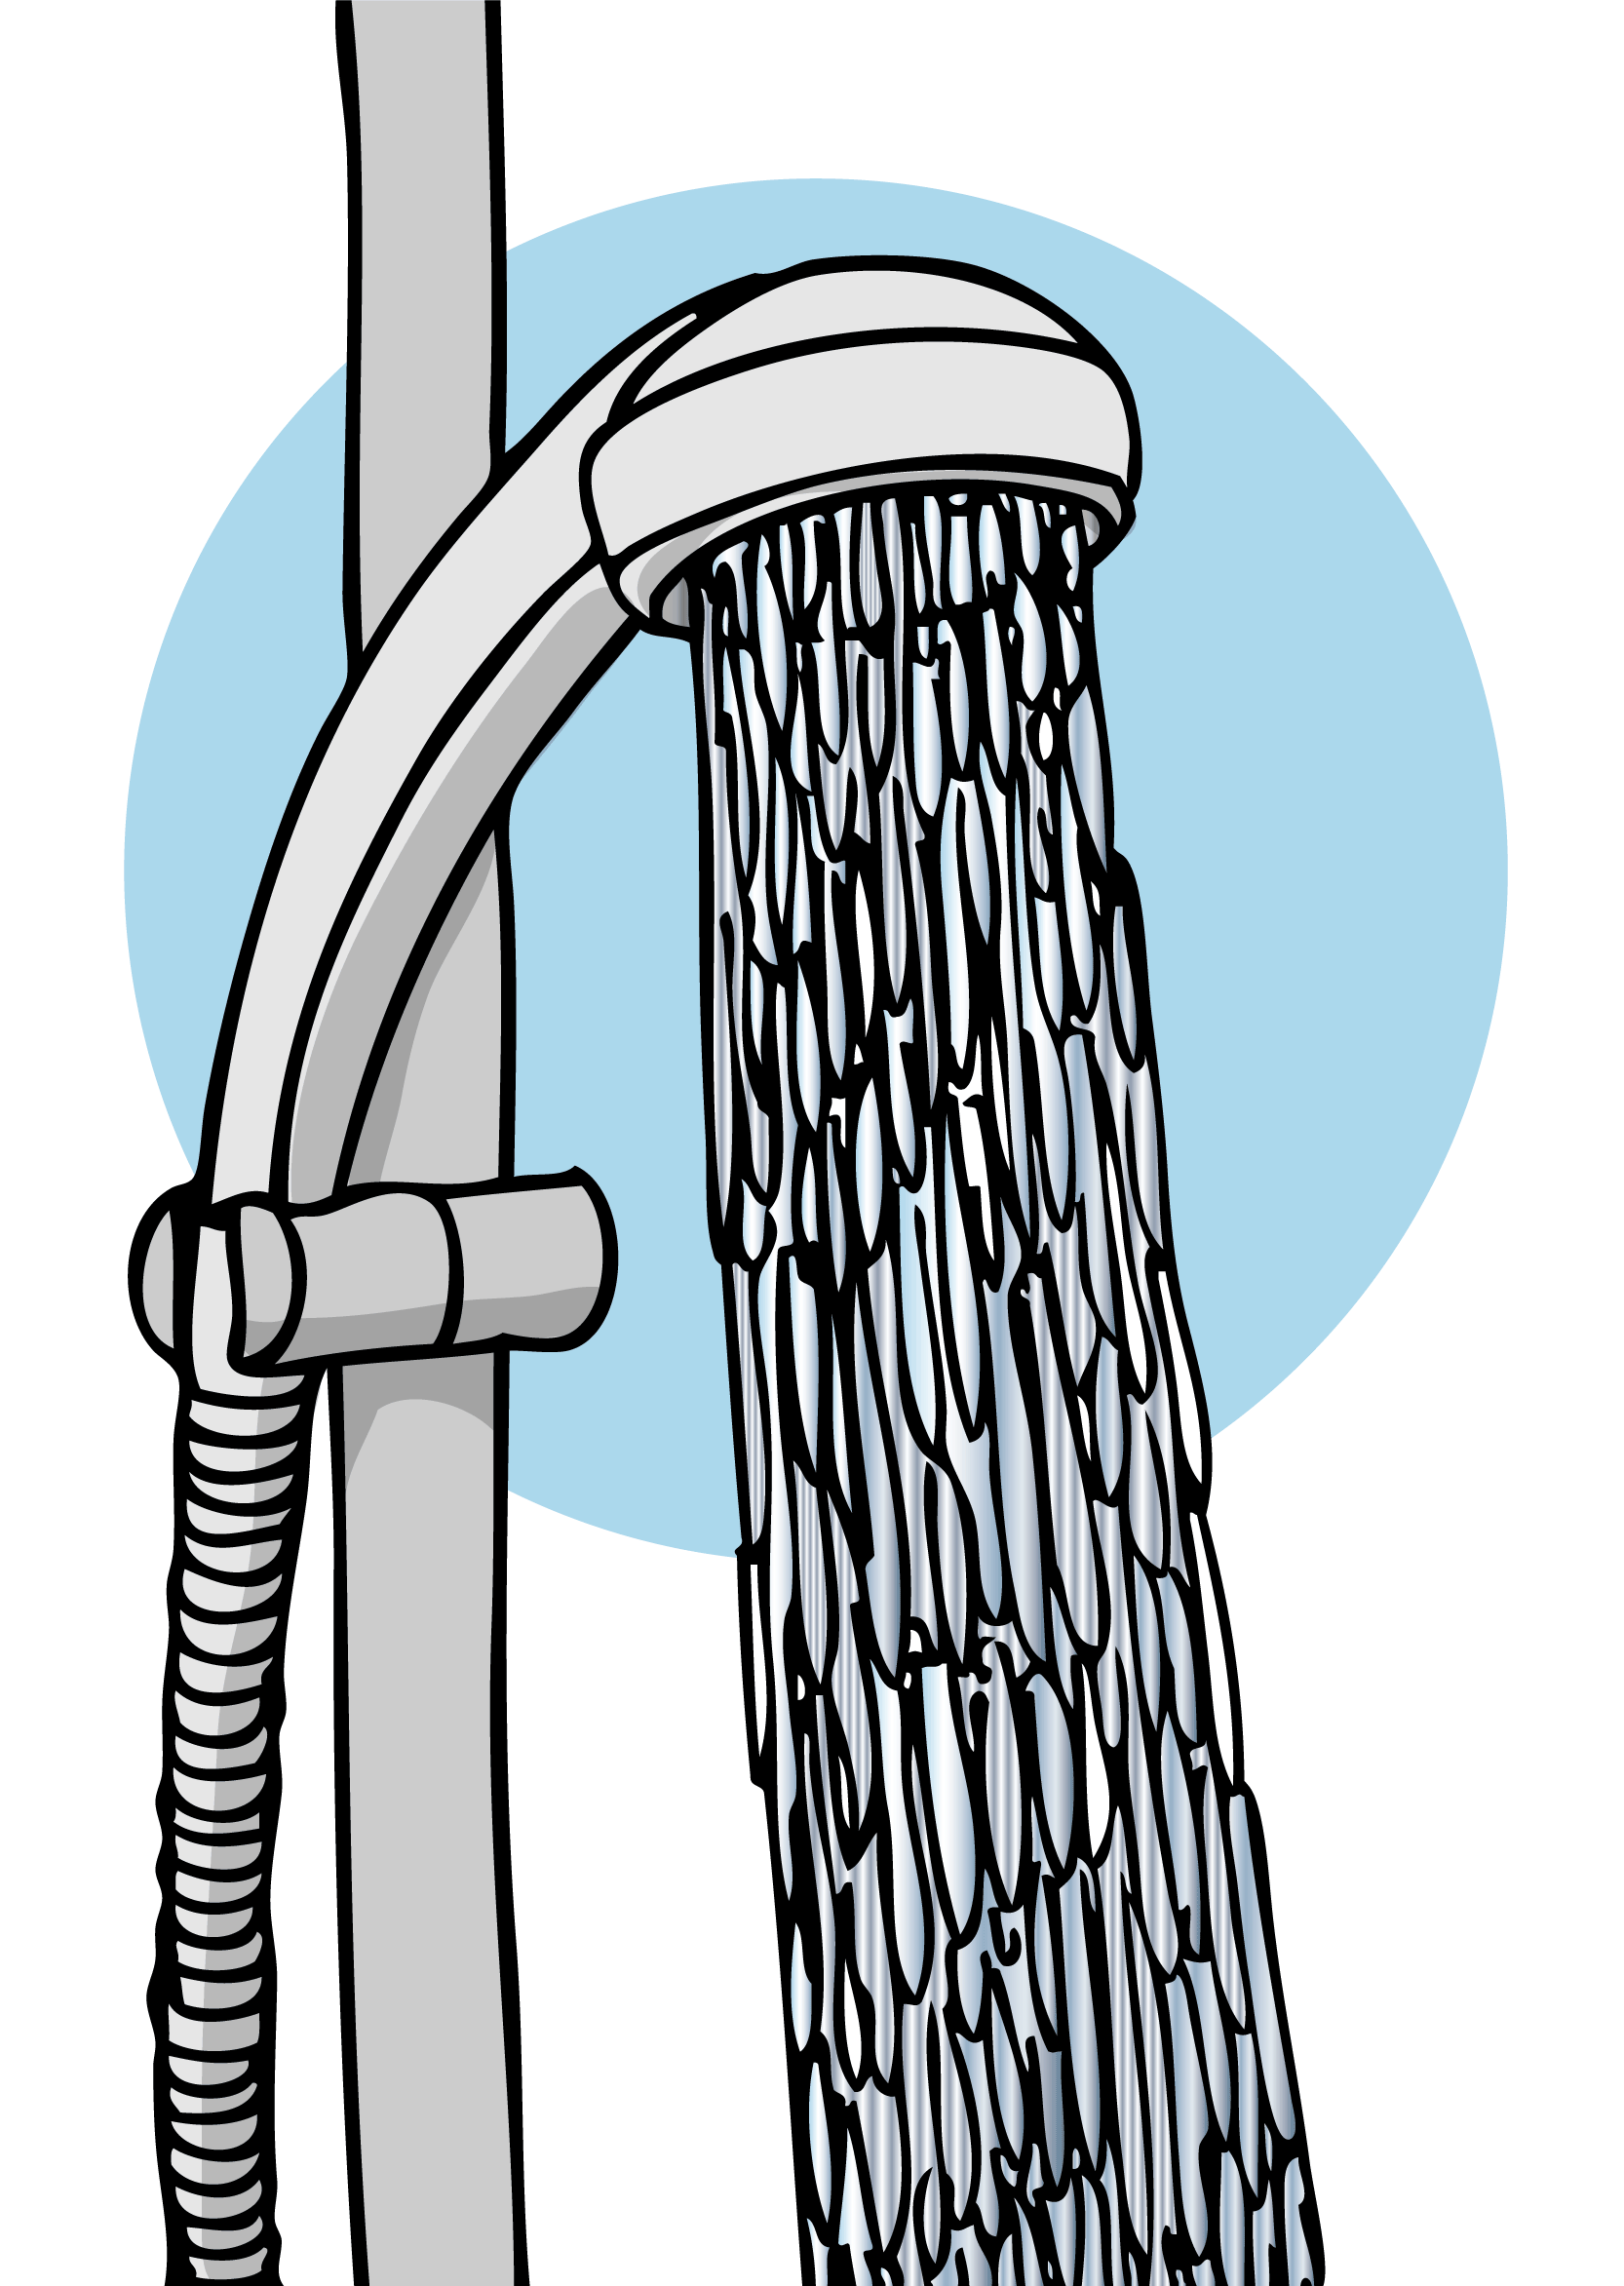 Dusch som det rinner vatten ur, illustration.